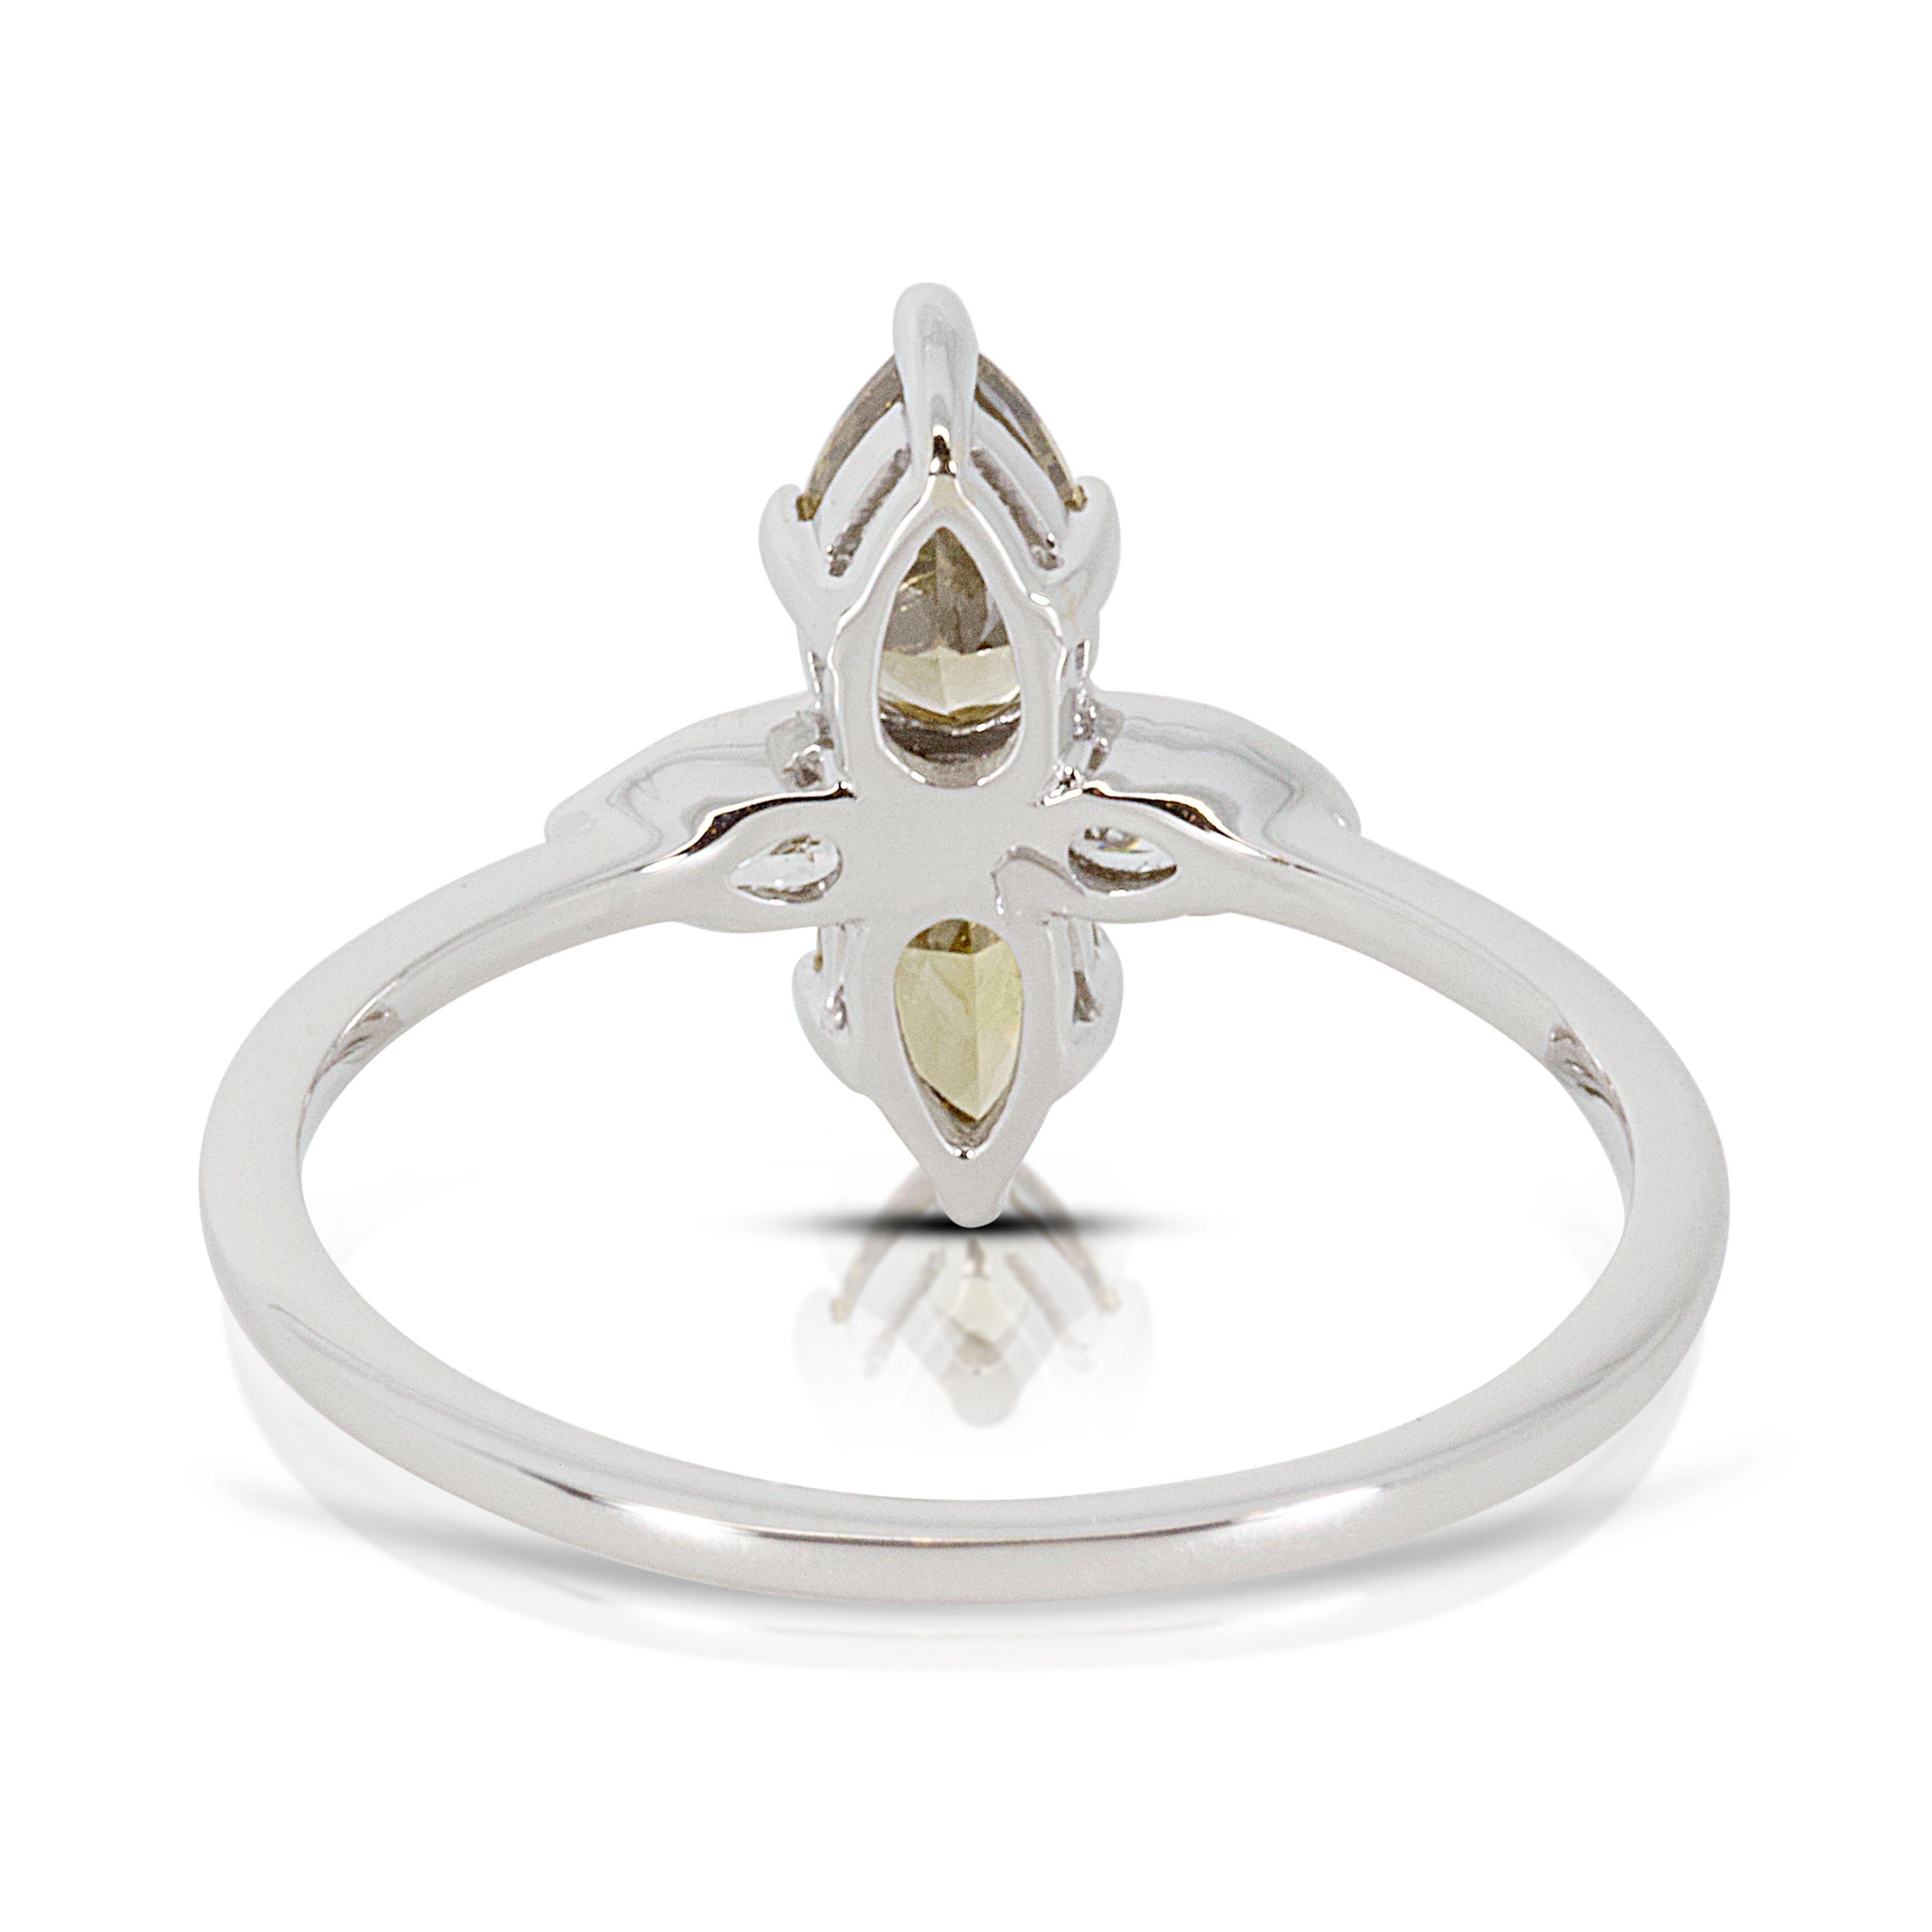 Elegant 18k White Gold Ring with 1.13 ct Natural Diamonds- NGI cert For Sale 1